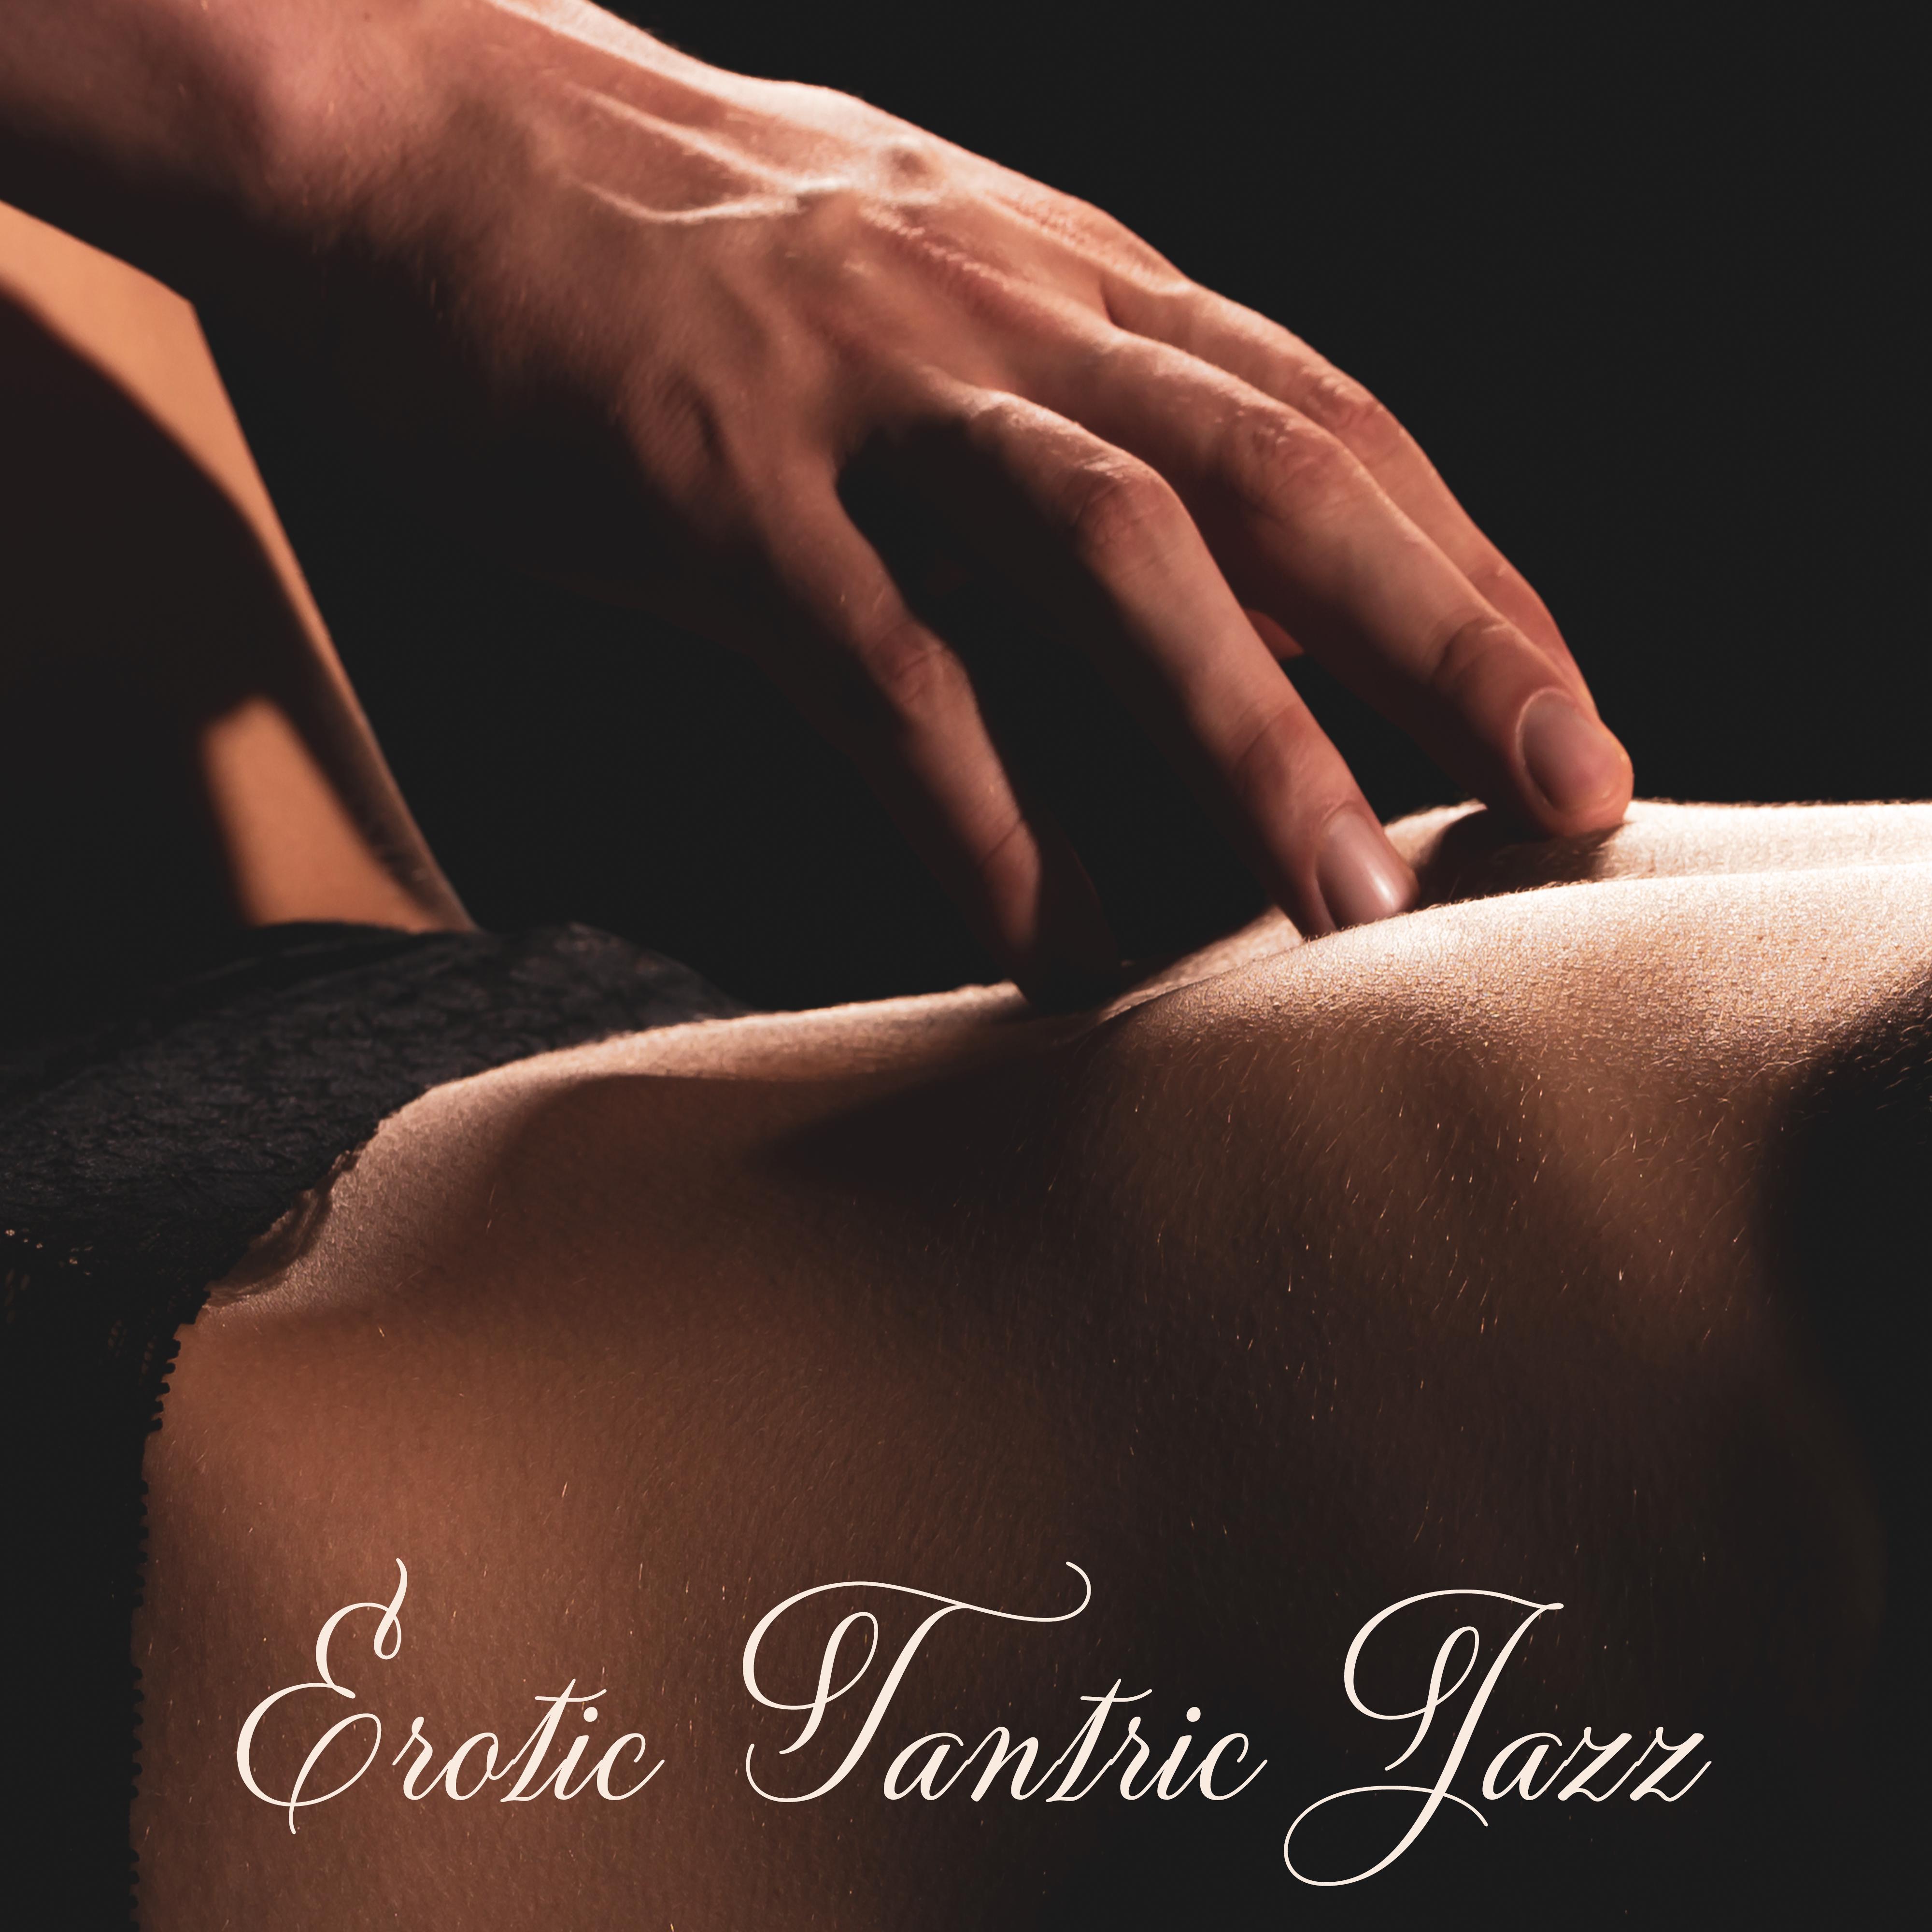 Erotic Tantric Jazz  Jazz for Making Love